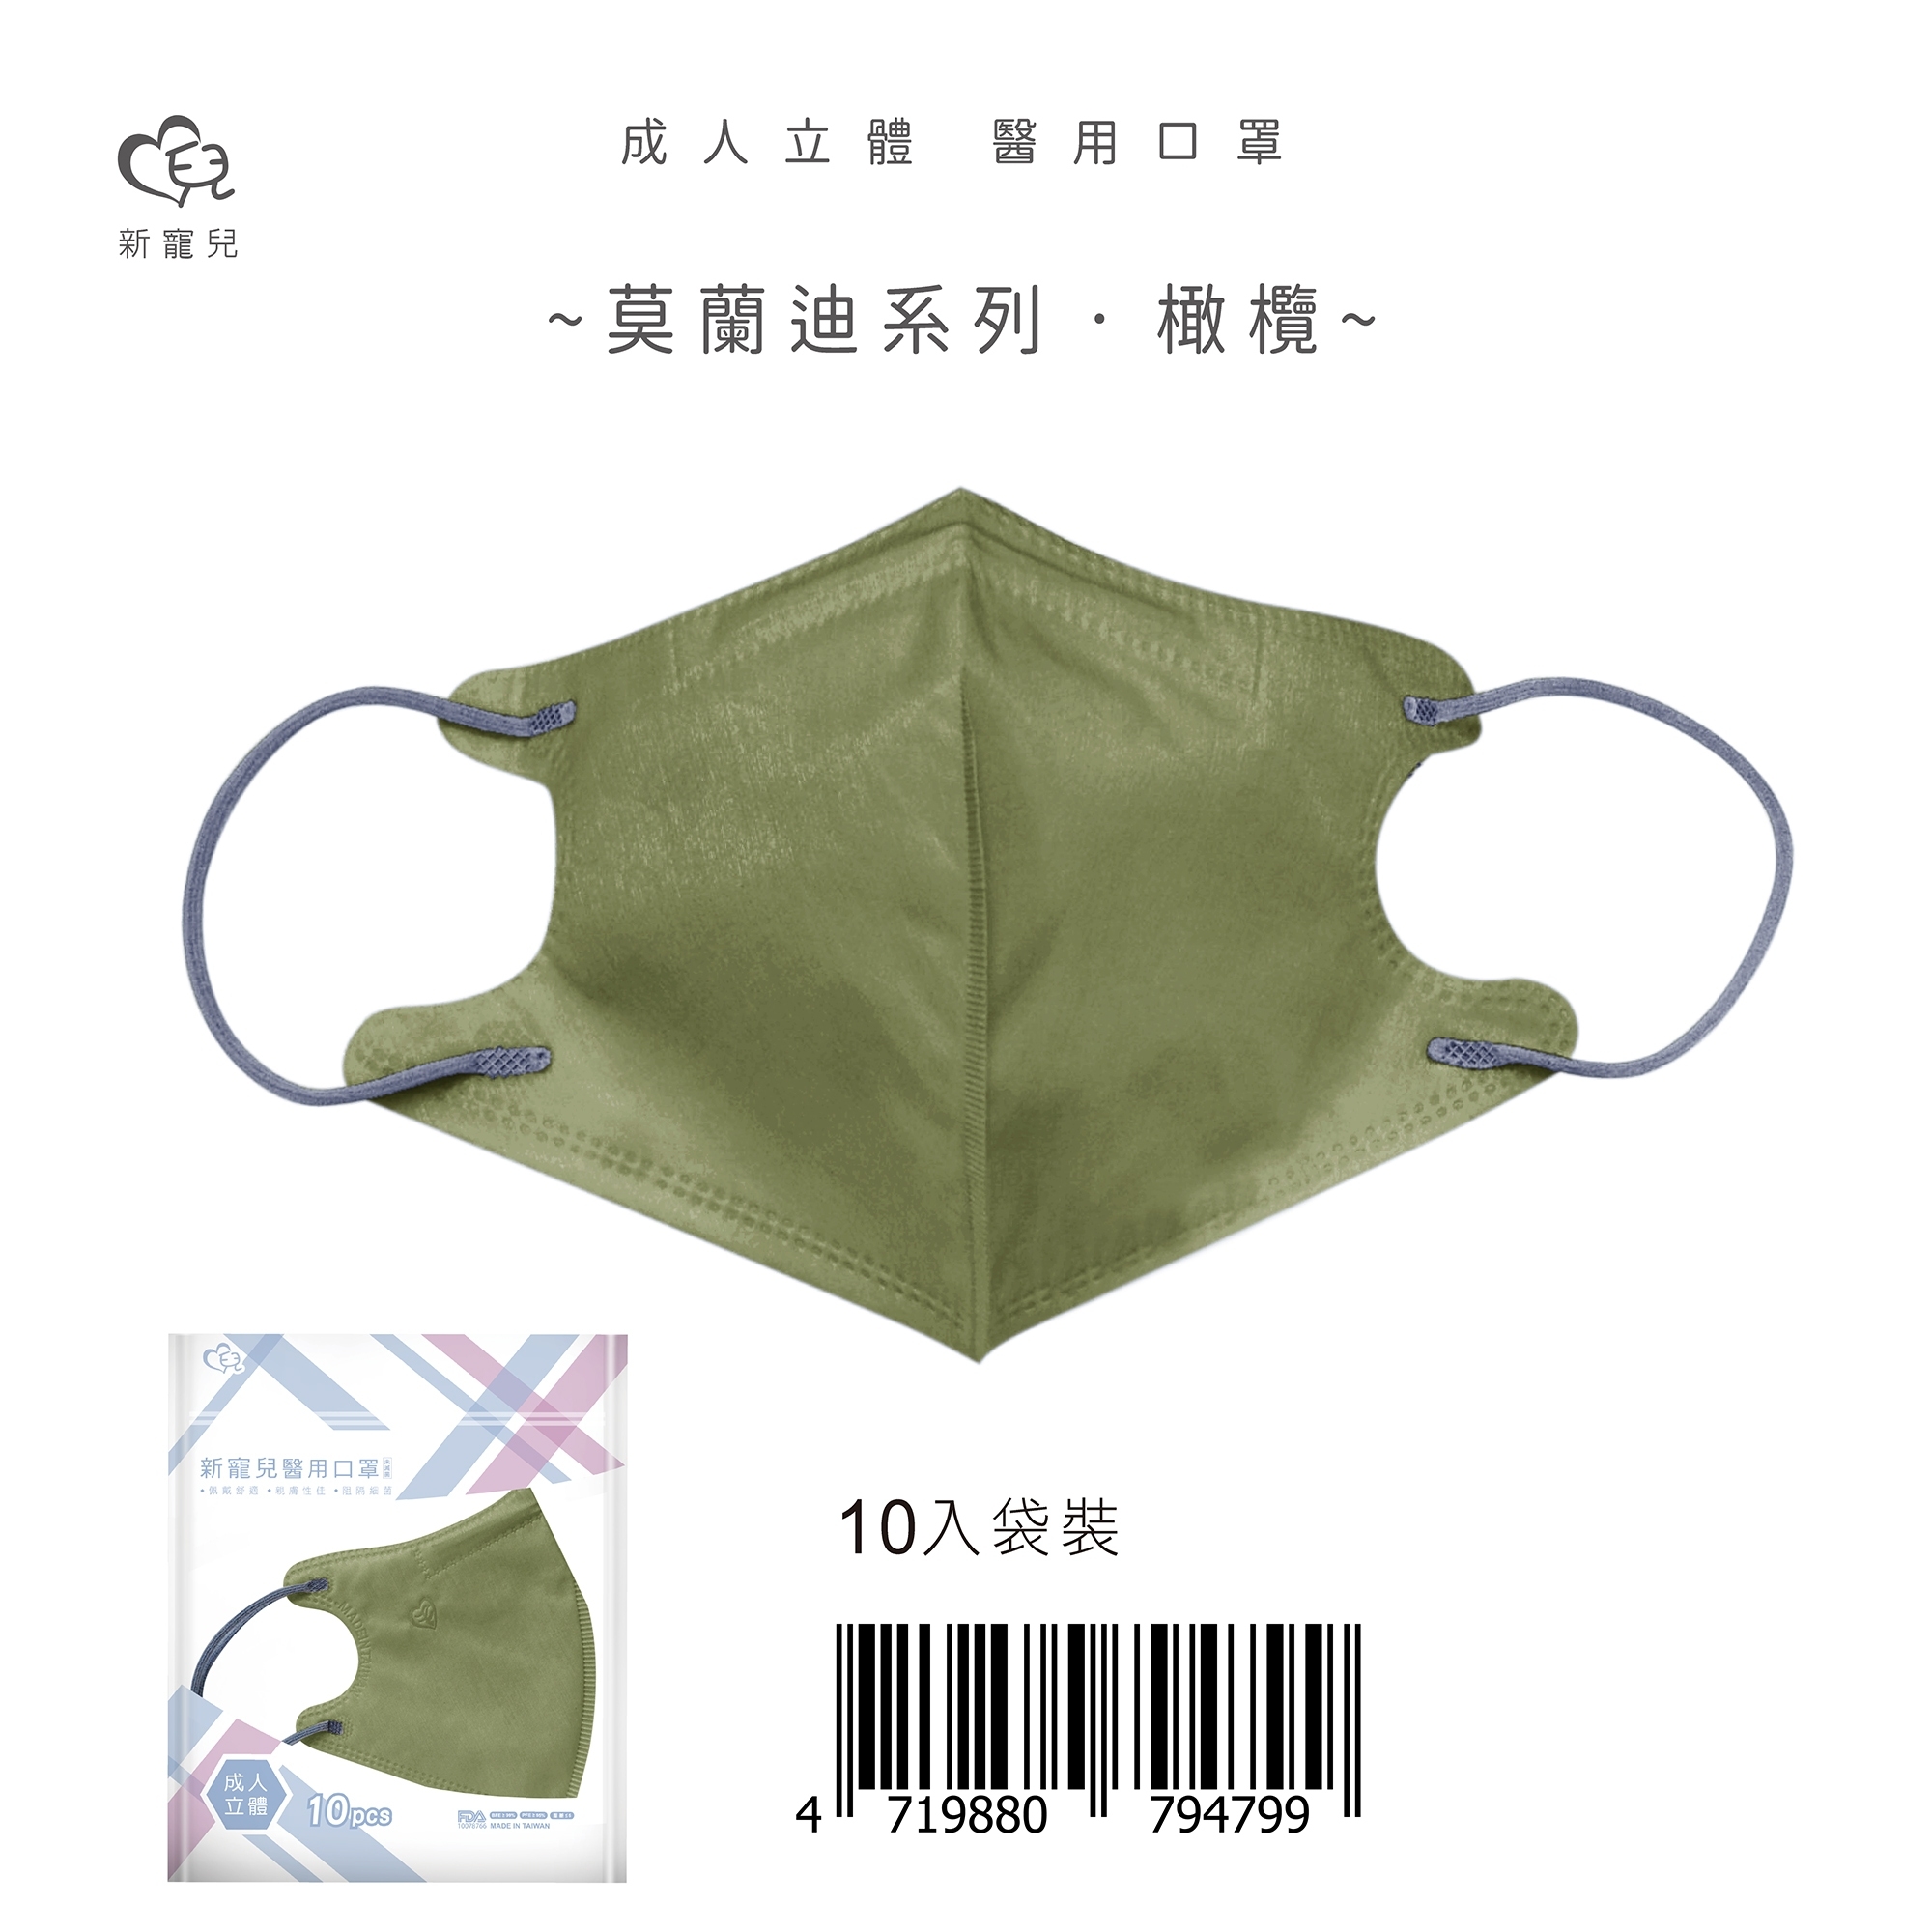 【新寵兒】莫蘭迪3D成人醫療口罩10入/包 (18色任選)